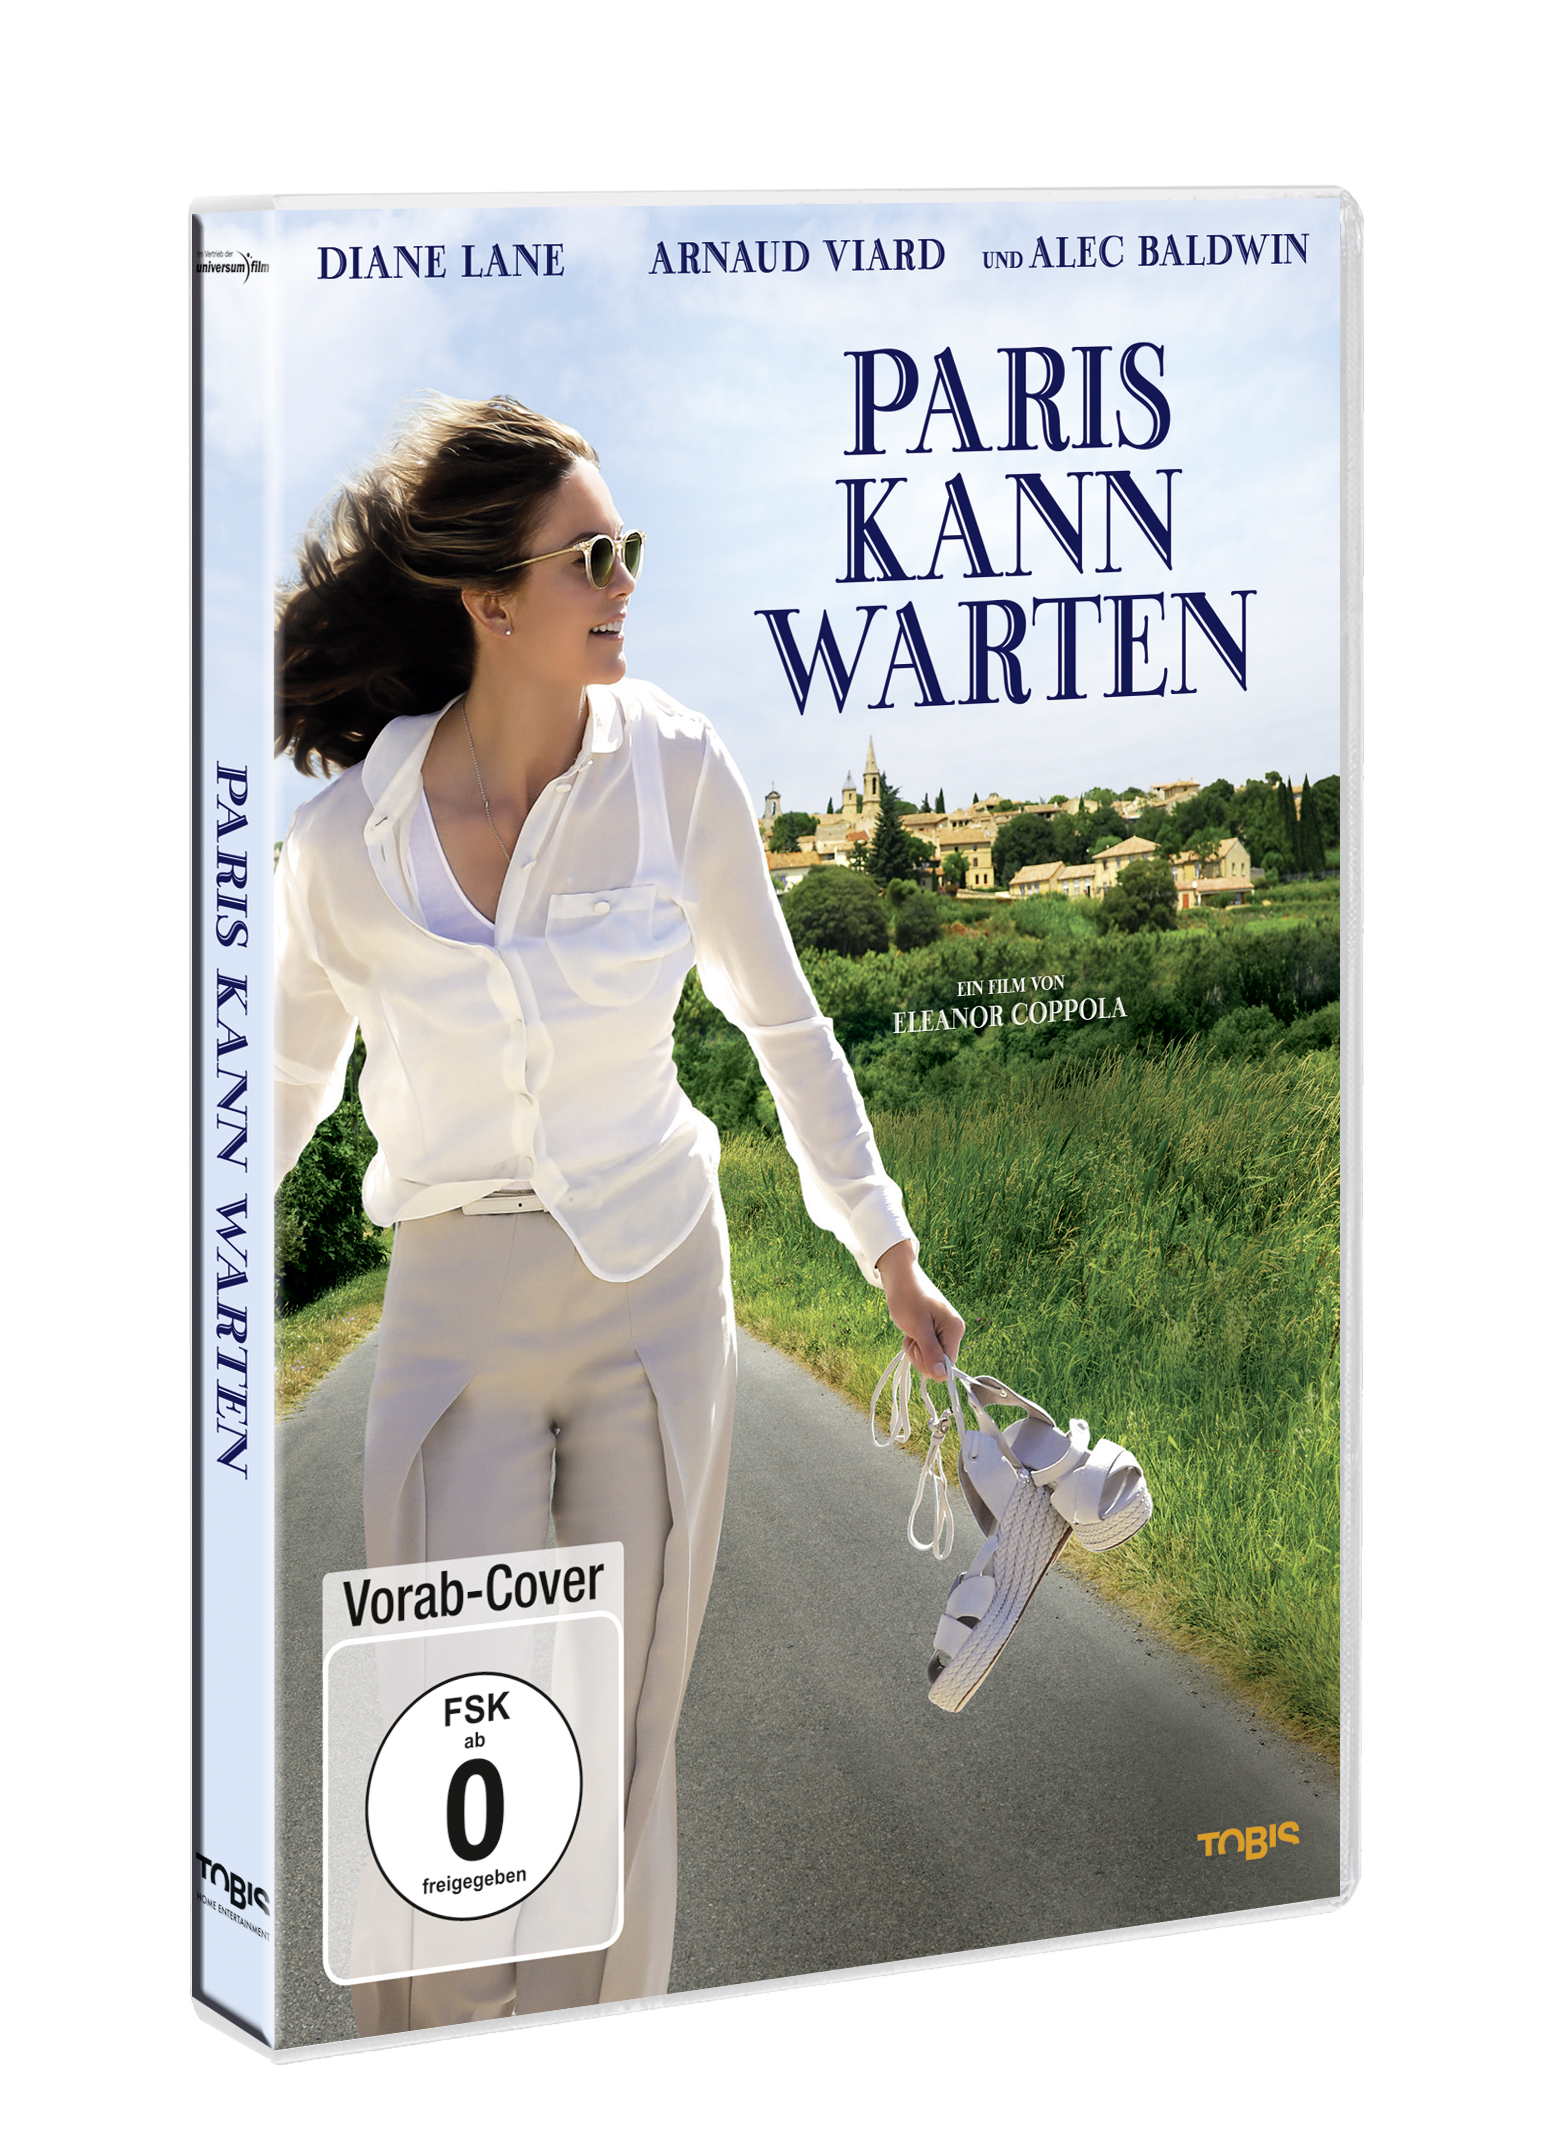 warten DVD kann Paris